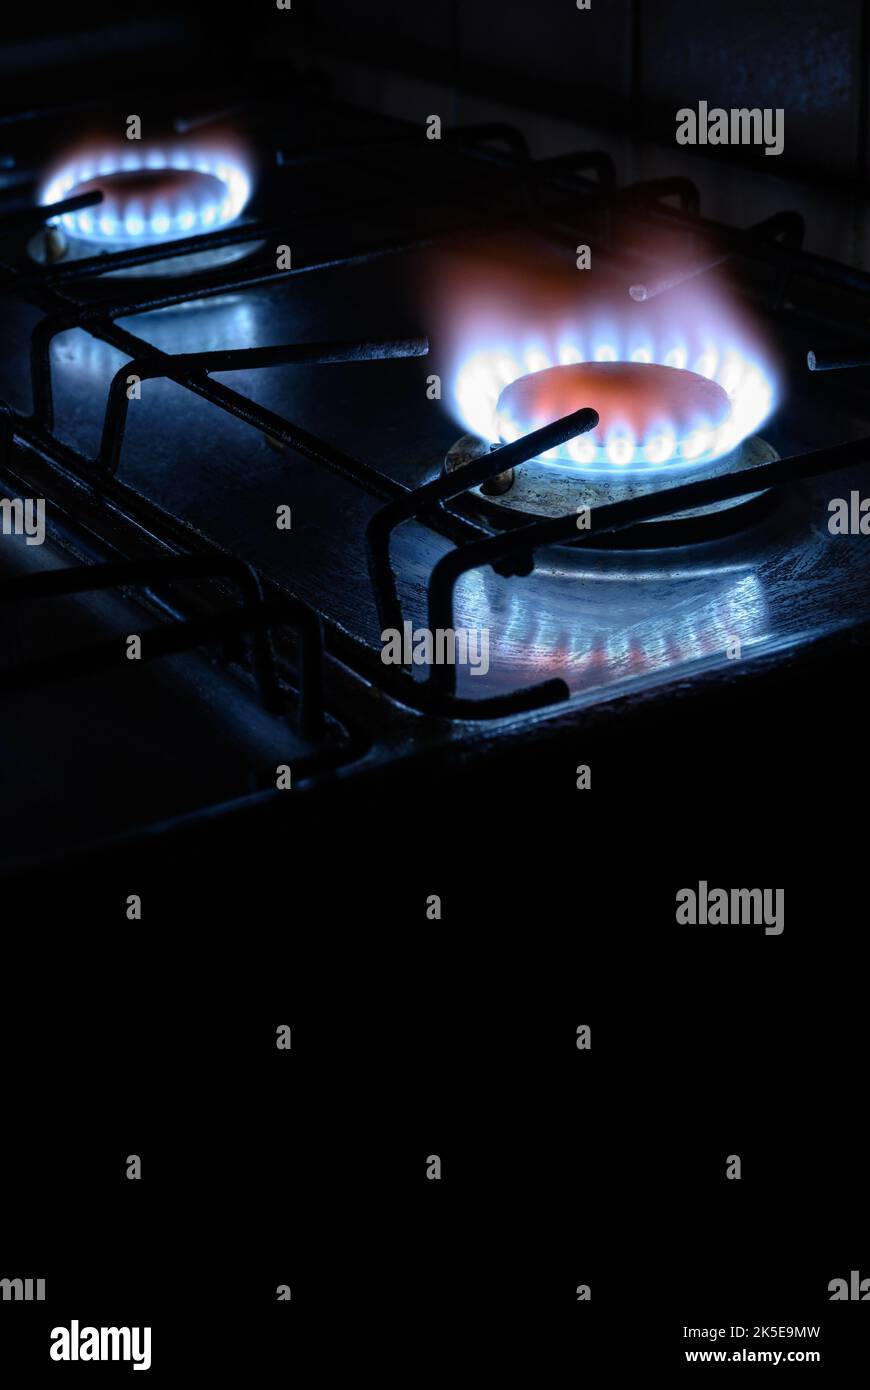 Cuisinière à gaz à la maison, le gaz naturel de propane brûle sur fond sombre avec un espace de copie noir, vue verticale de la flamme bleue des brûleurs. Concept de gaz cos Banque D'Images